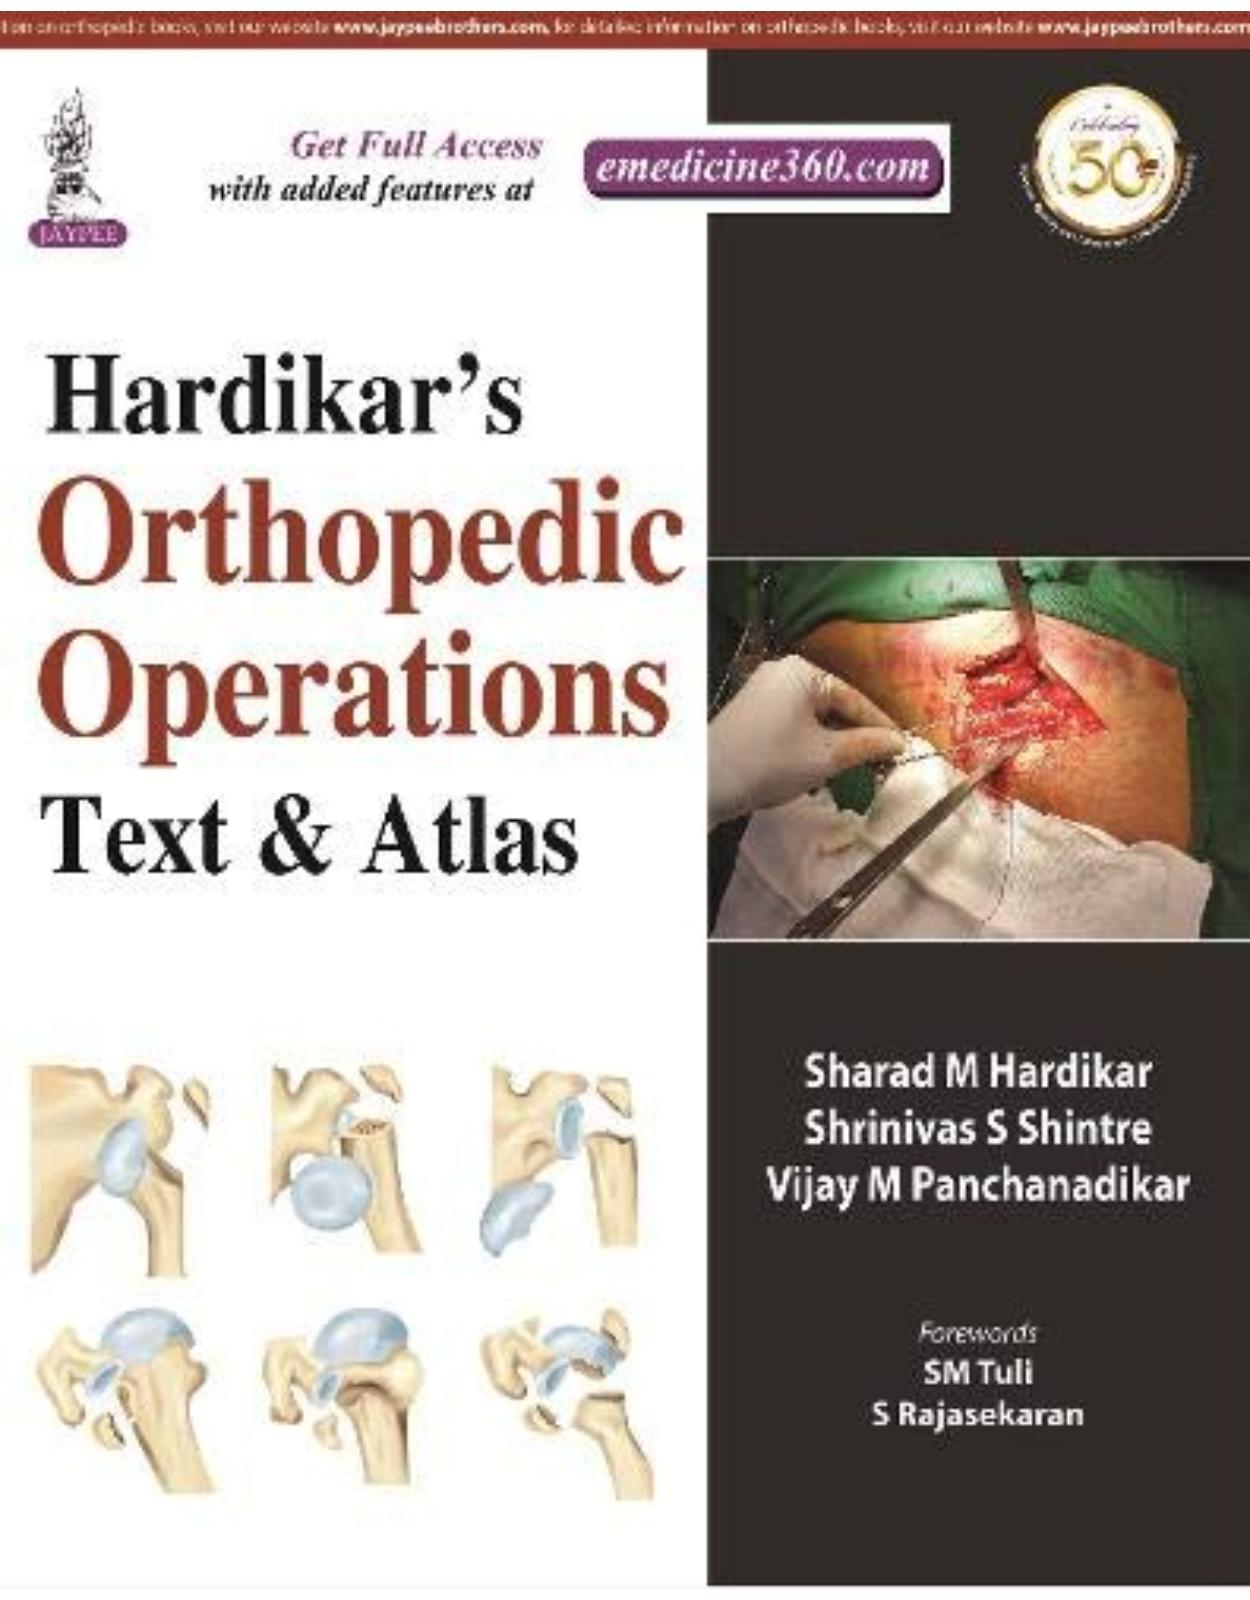 Hardikar's Orthopedic Operations